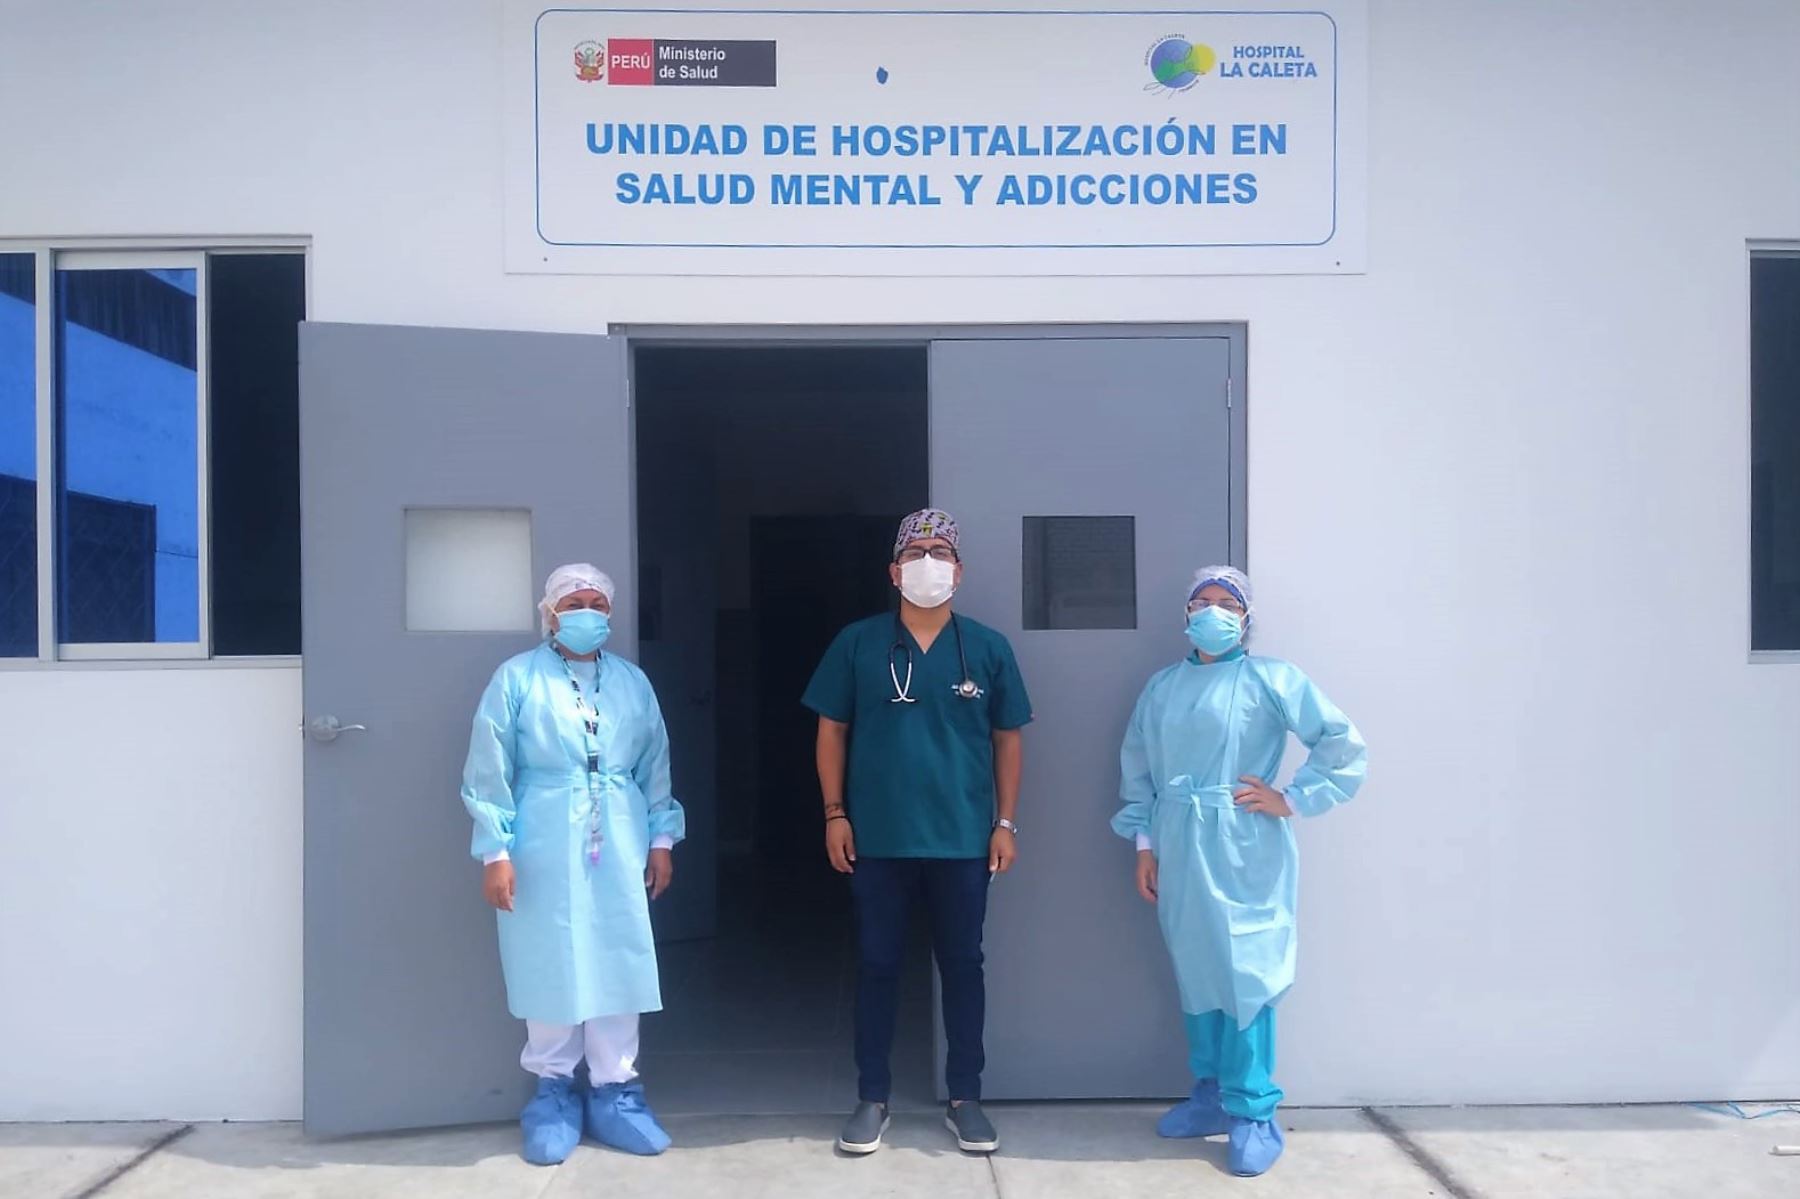 Personal de salud mental del hospital La Caleta de Chimbote.